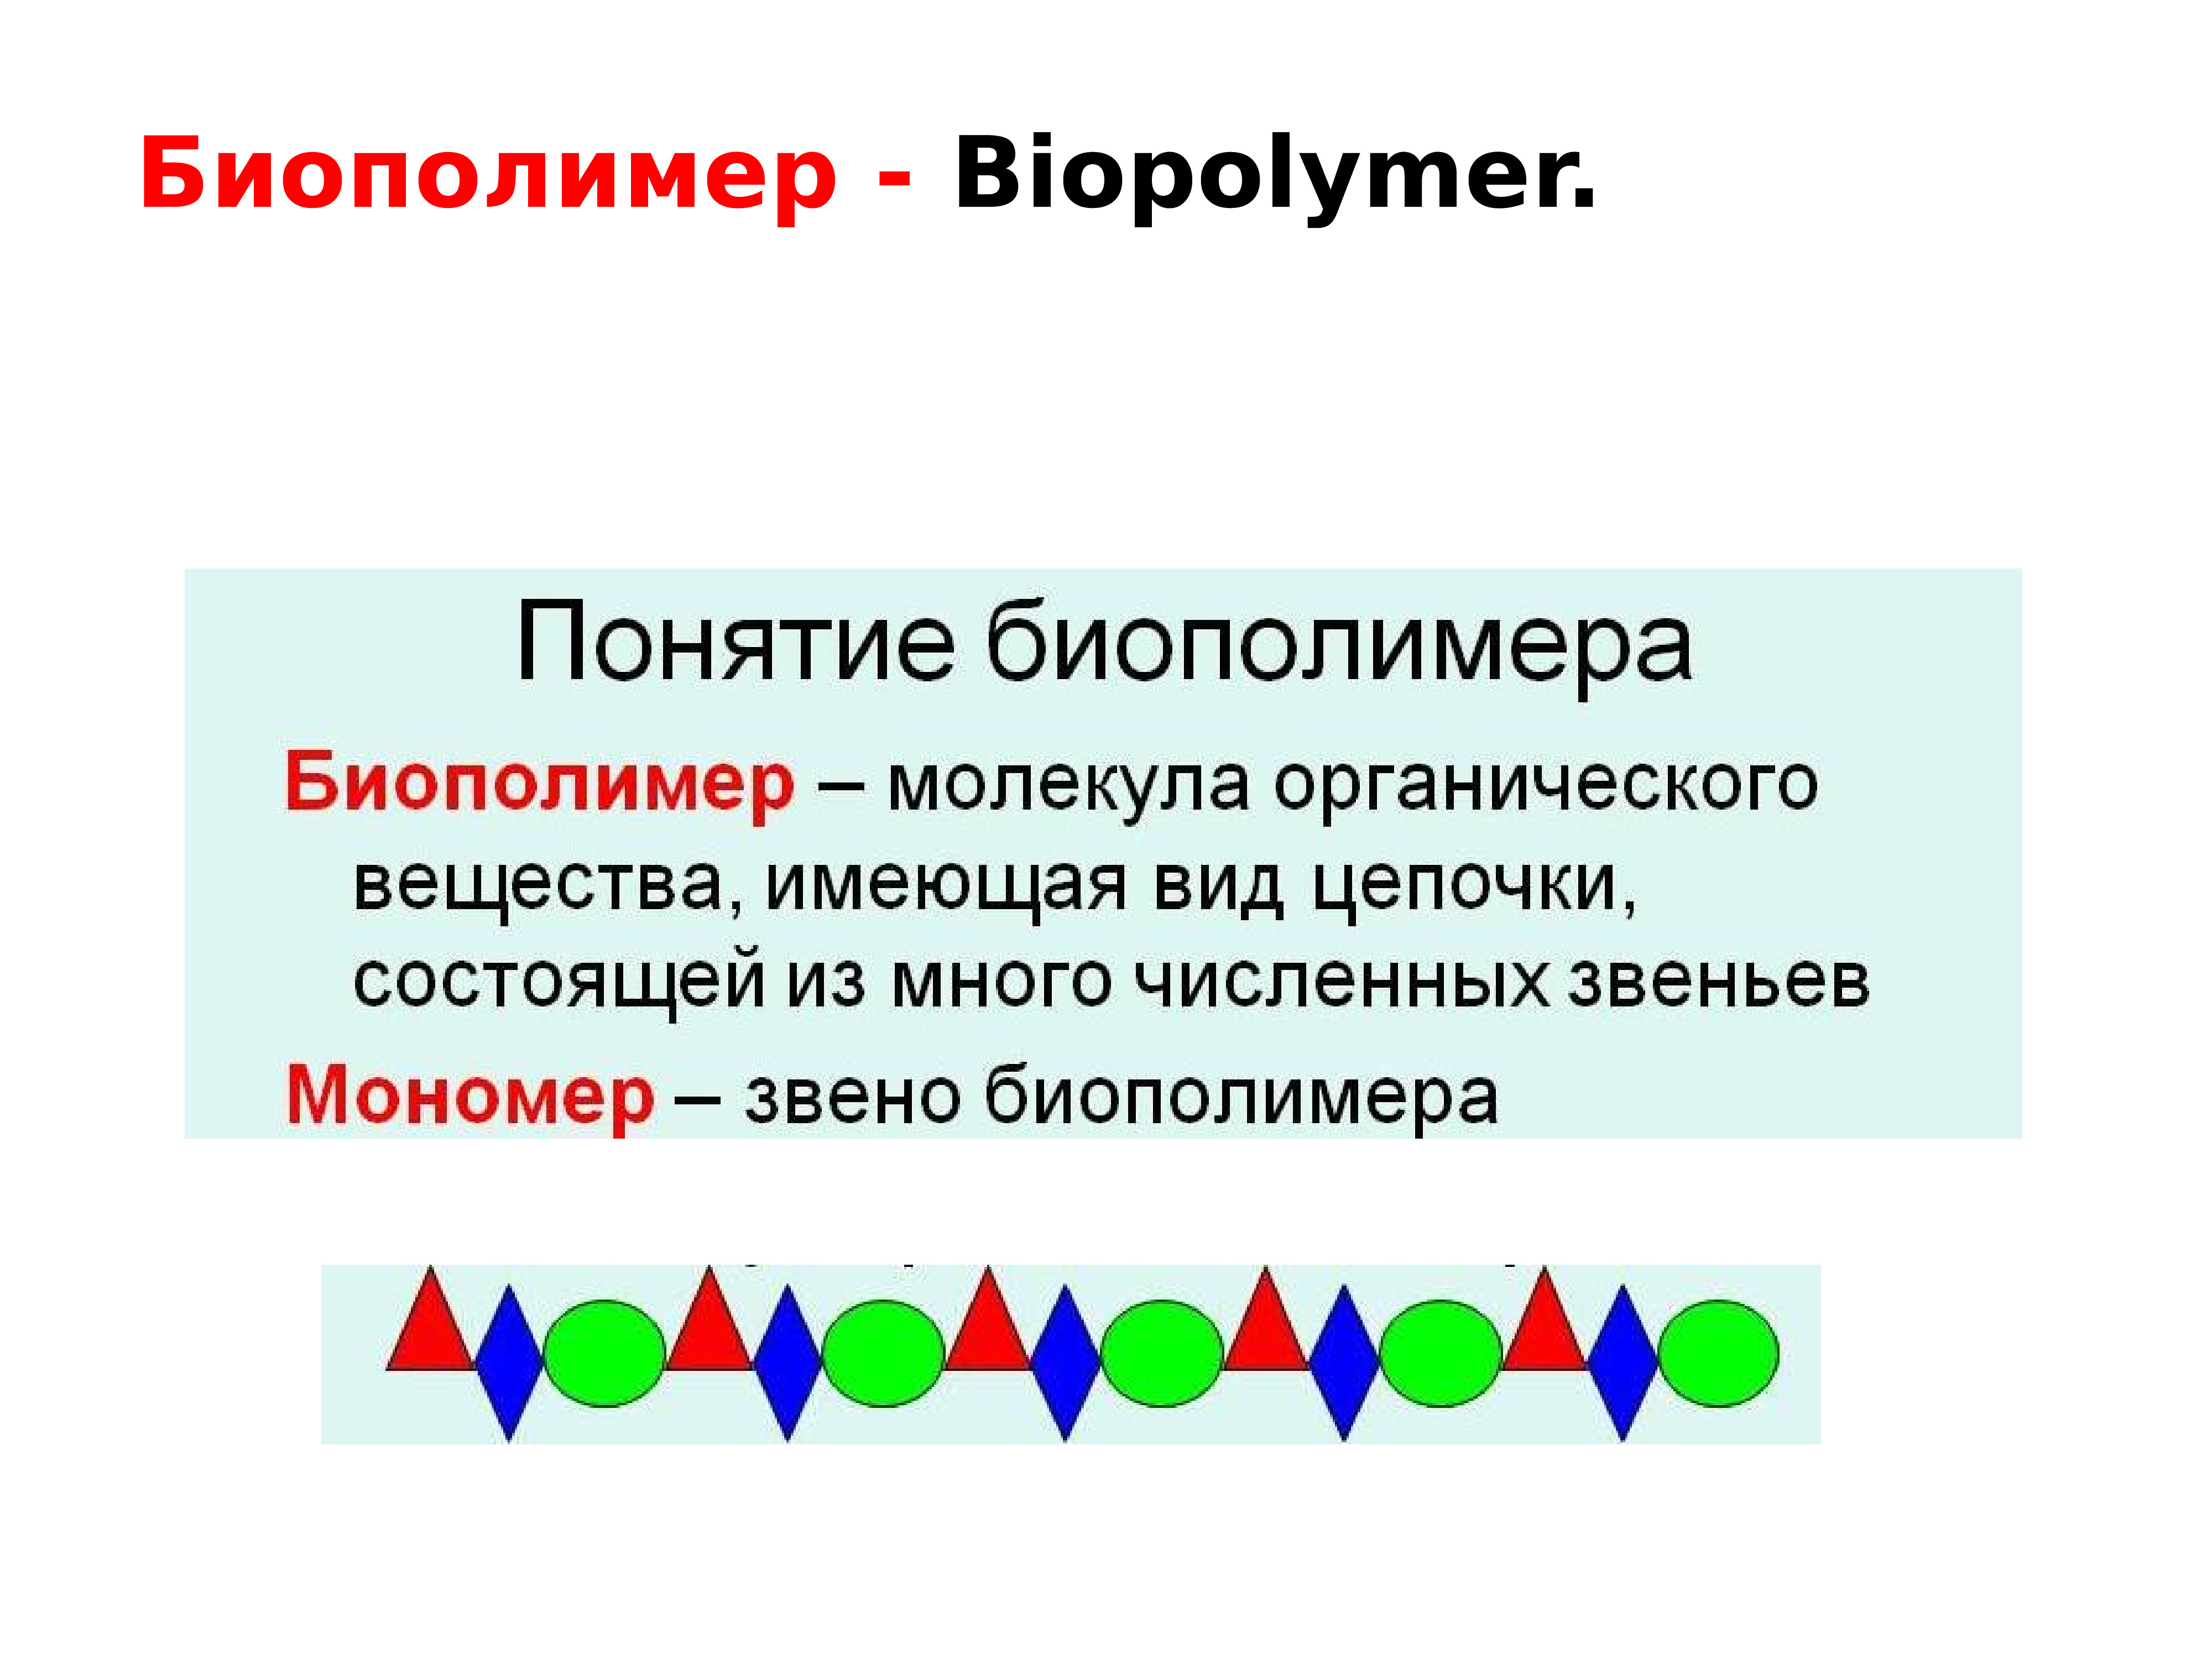 Значение биополимеров